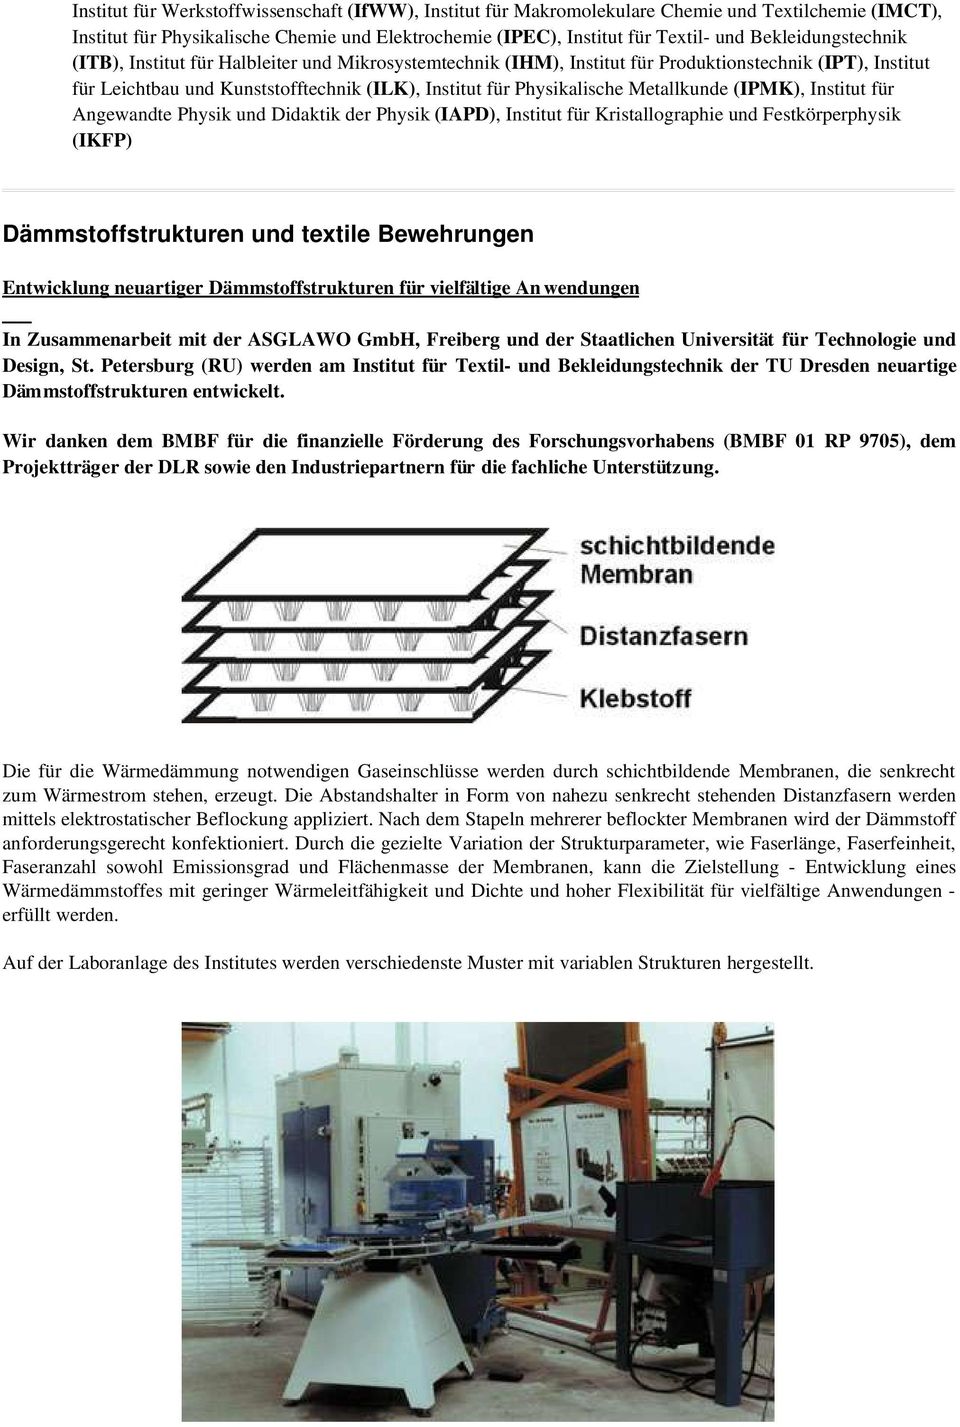 Metallkunde (IPMK), Institut für Angewandte Physik und Didaktik der Physik (IAPD), Institut für Kristallographie und Festkörperphysik (IKFP) Dämmstoffstrukturen und textile Bewehrungen Entwicklung